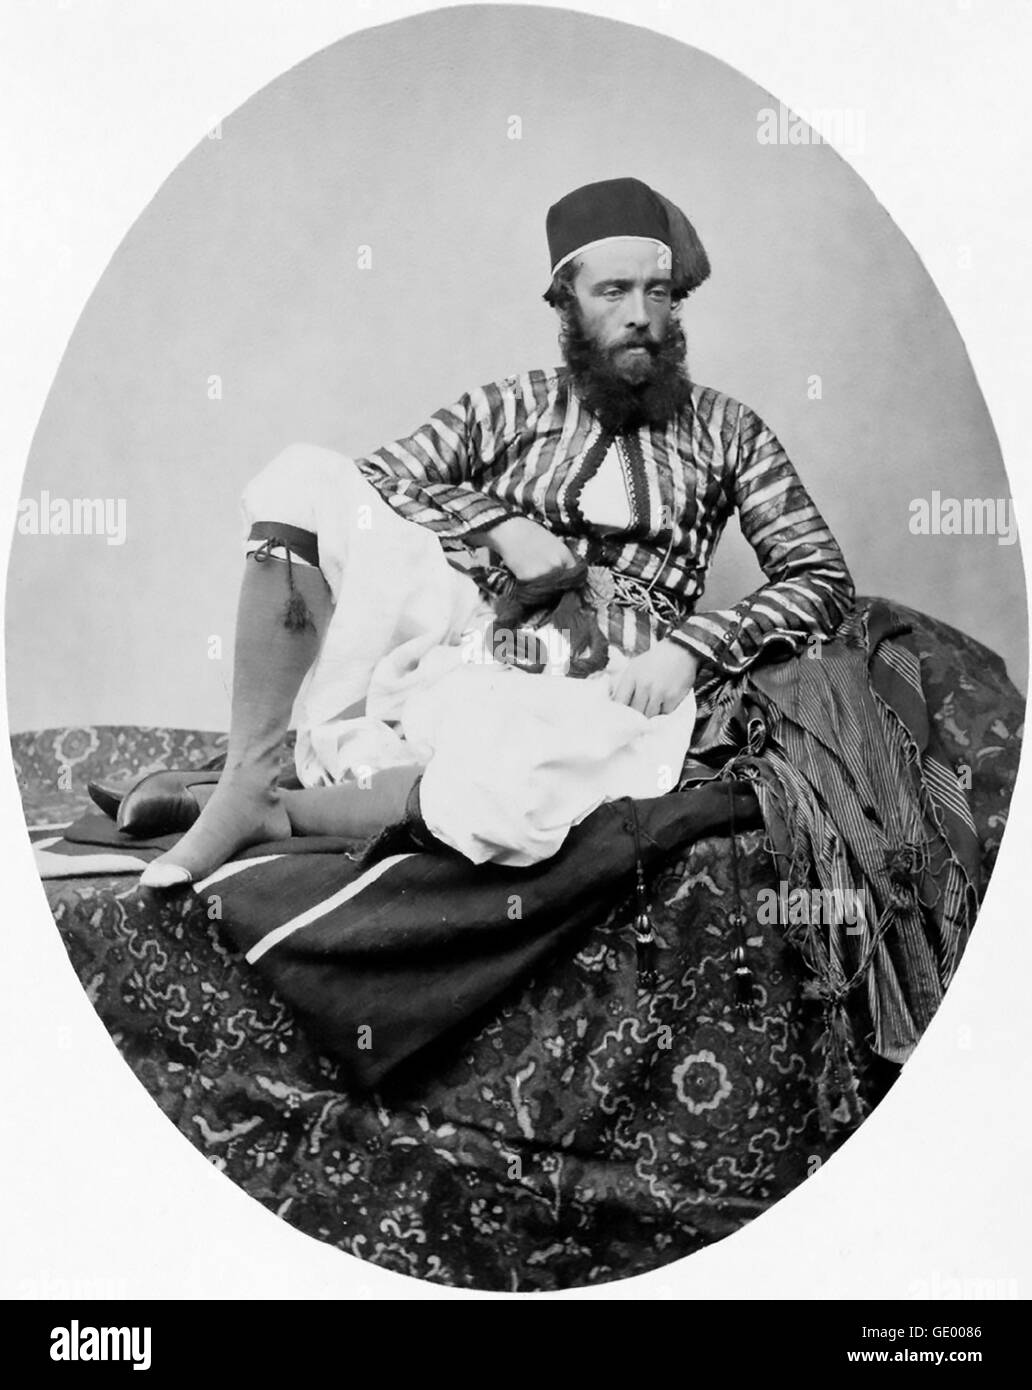 FRANCIS FRITH (1822-1898) englischen Fotografen, die sich in den Ansichten der Gemeinden, alles Ost und Englisch spezialisiert. Selbstporträt von 1857 Stockfoto